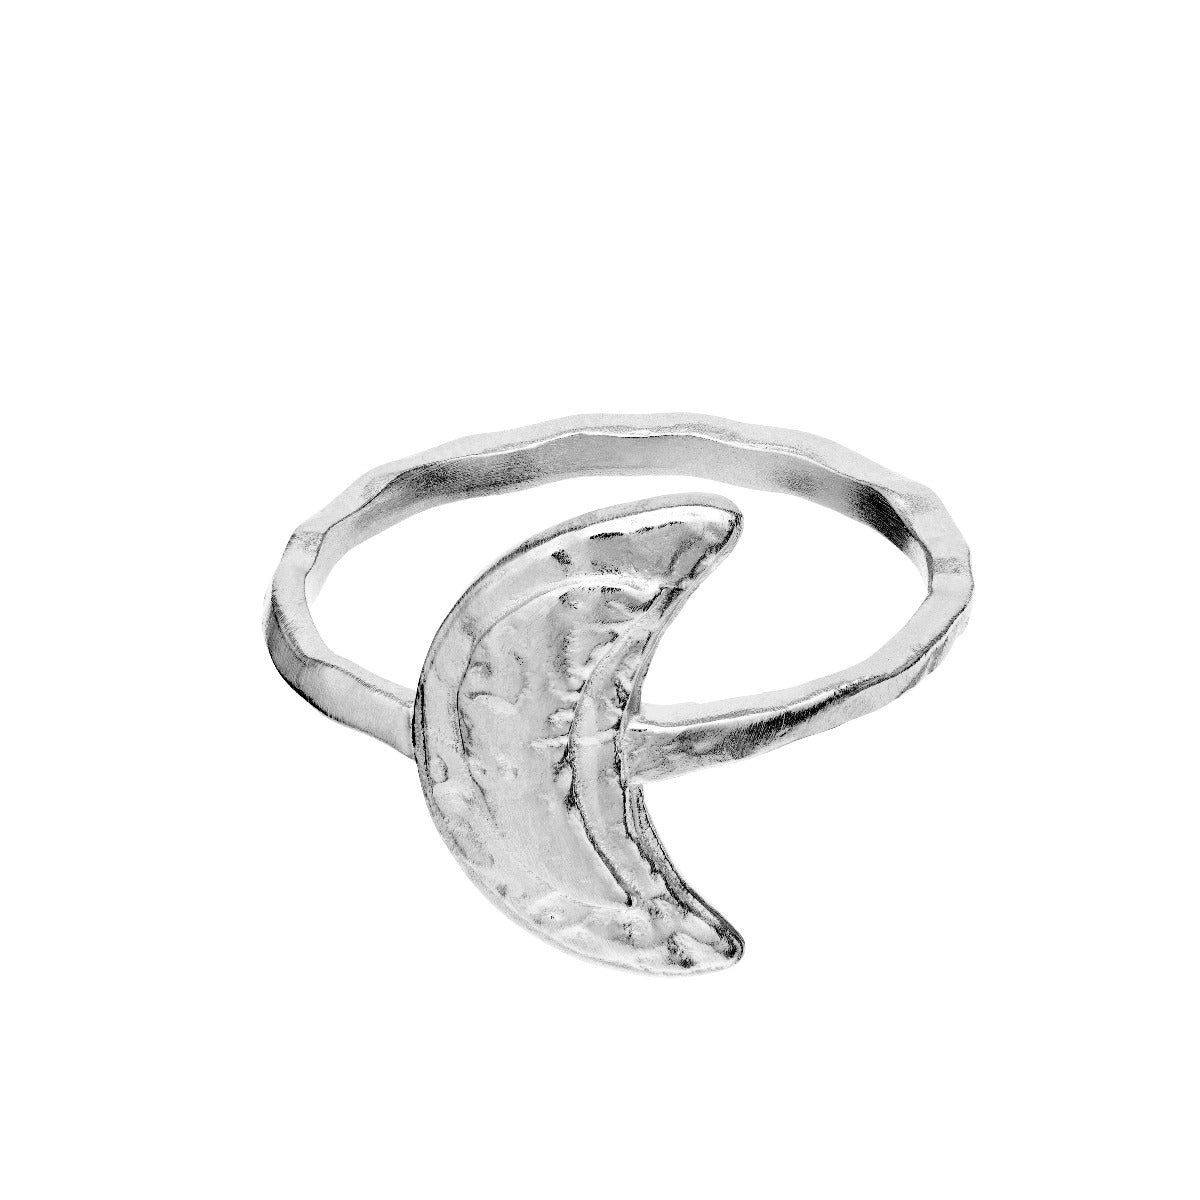 Maanesten Jacinta sølv ring - 4811C